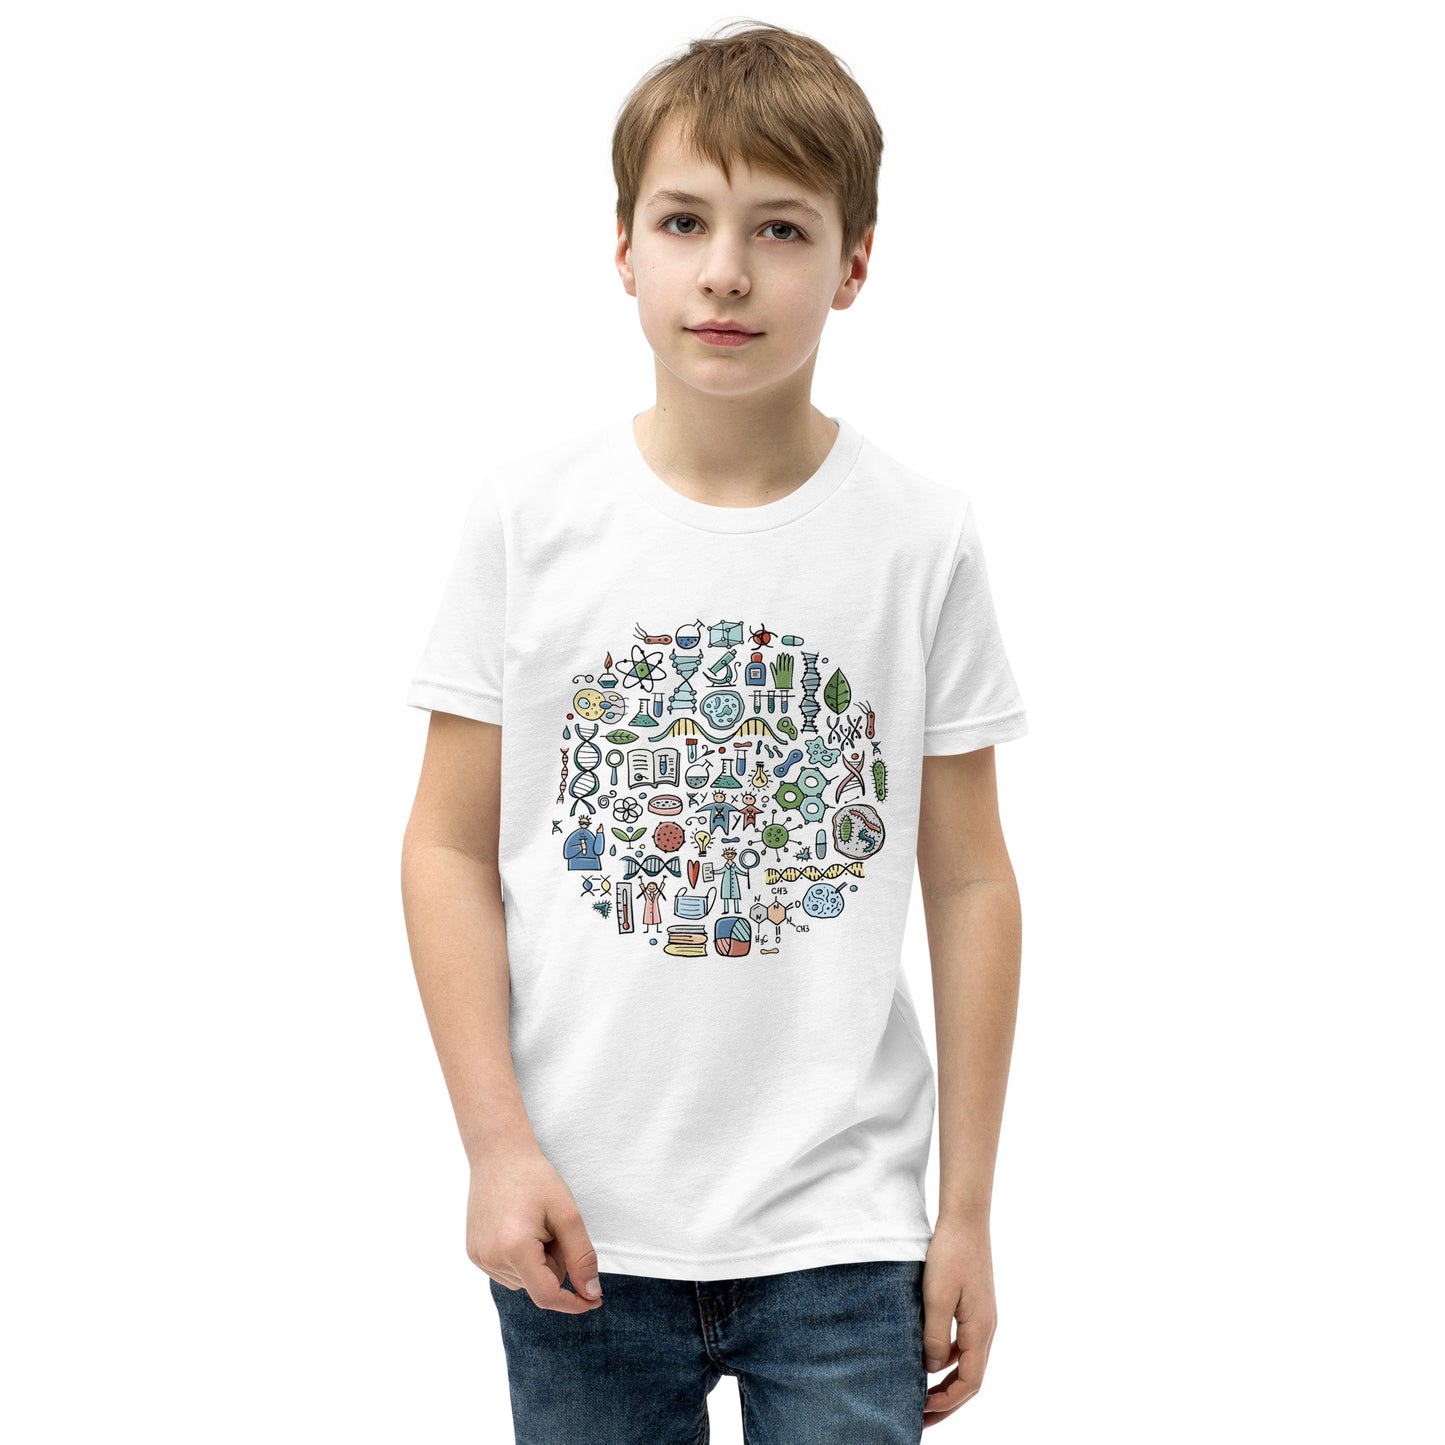 Youth Short Sleeve T-Shirt Genetic kudrylab